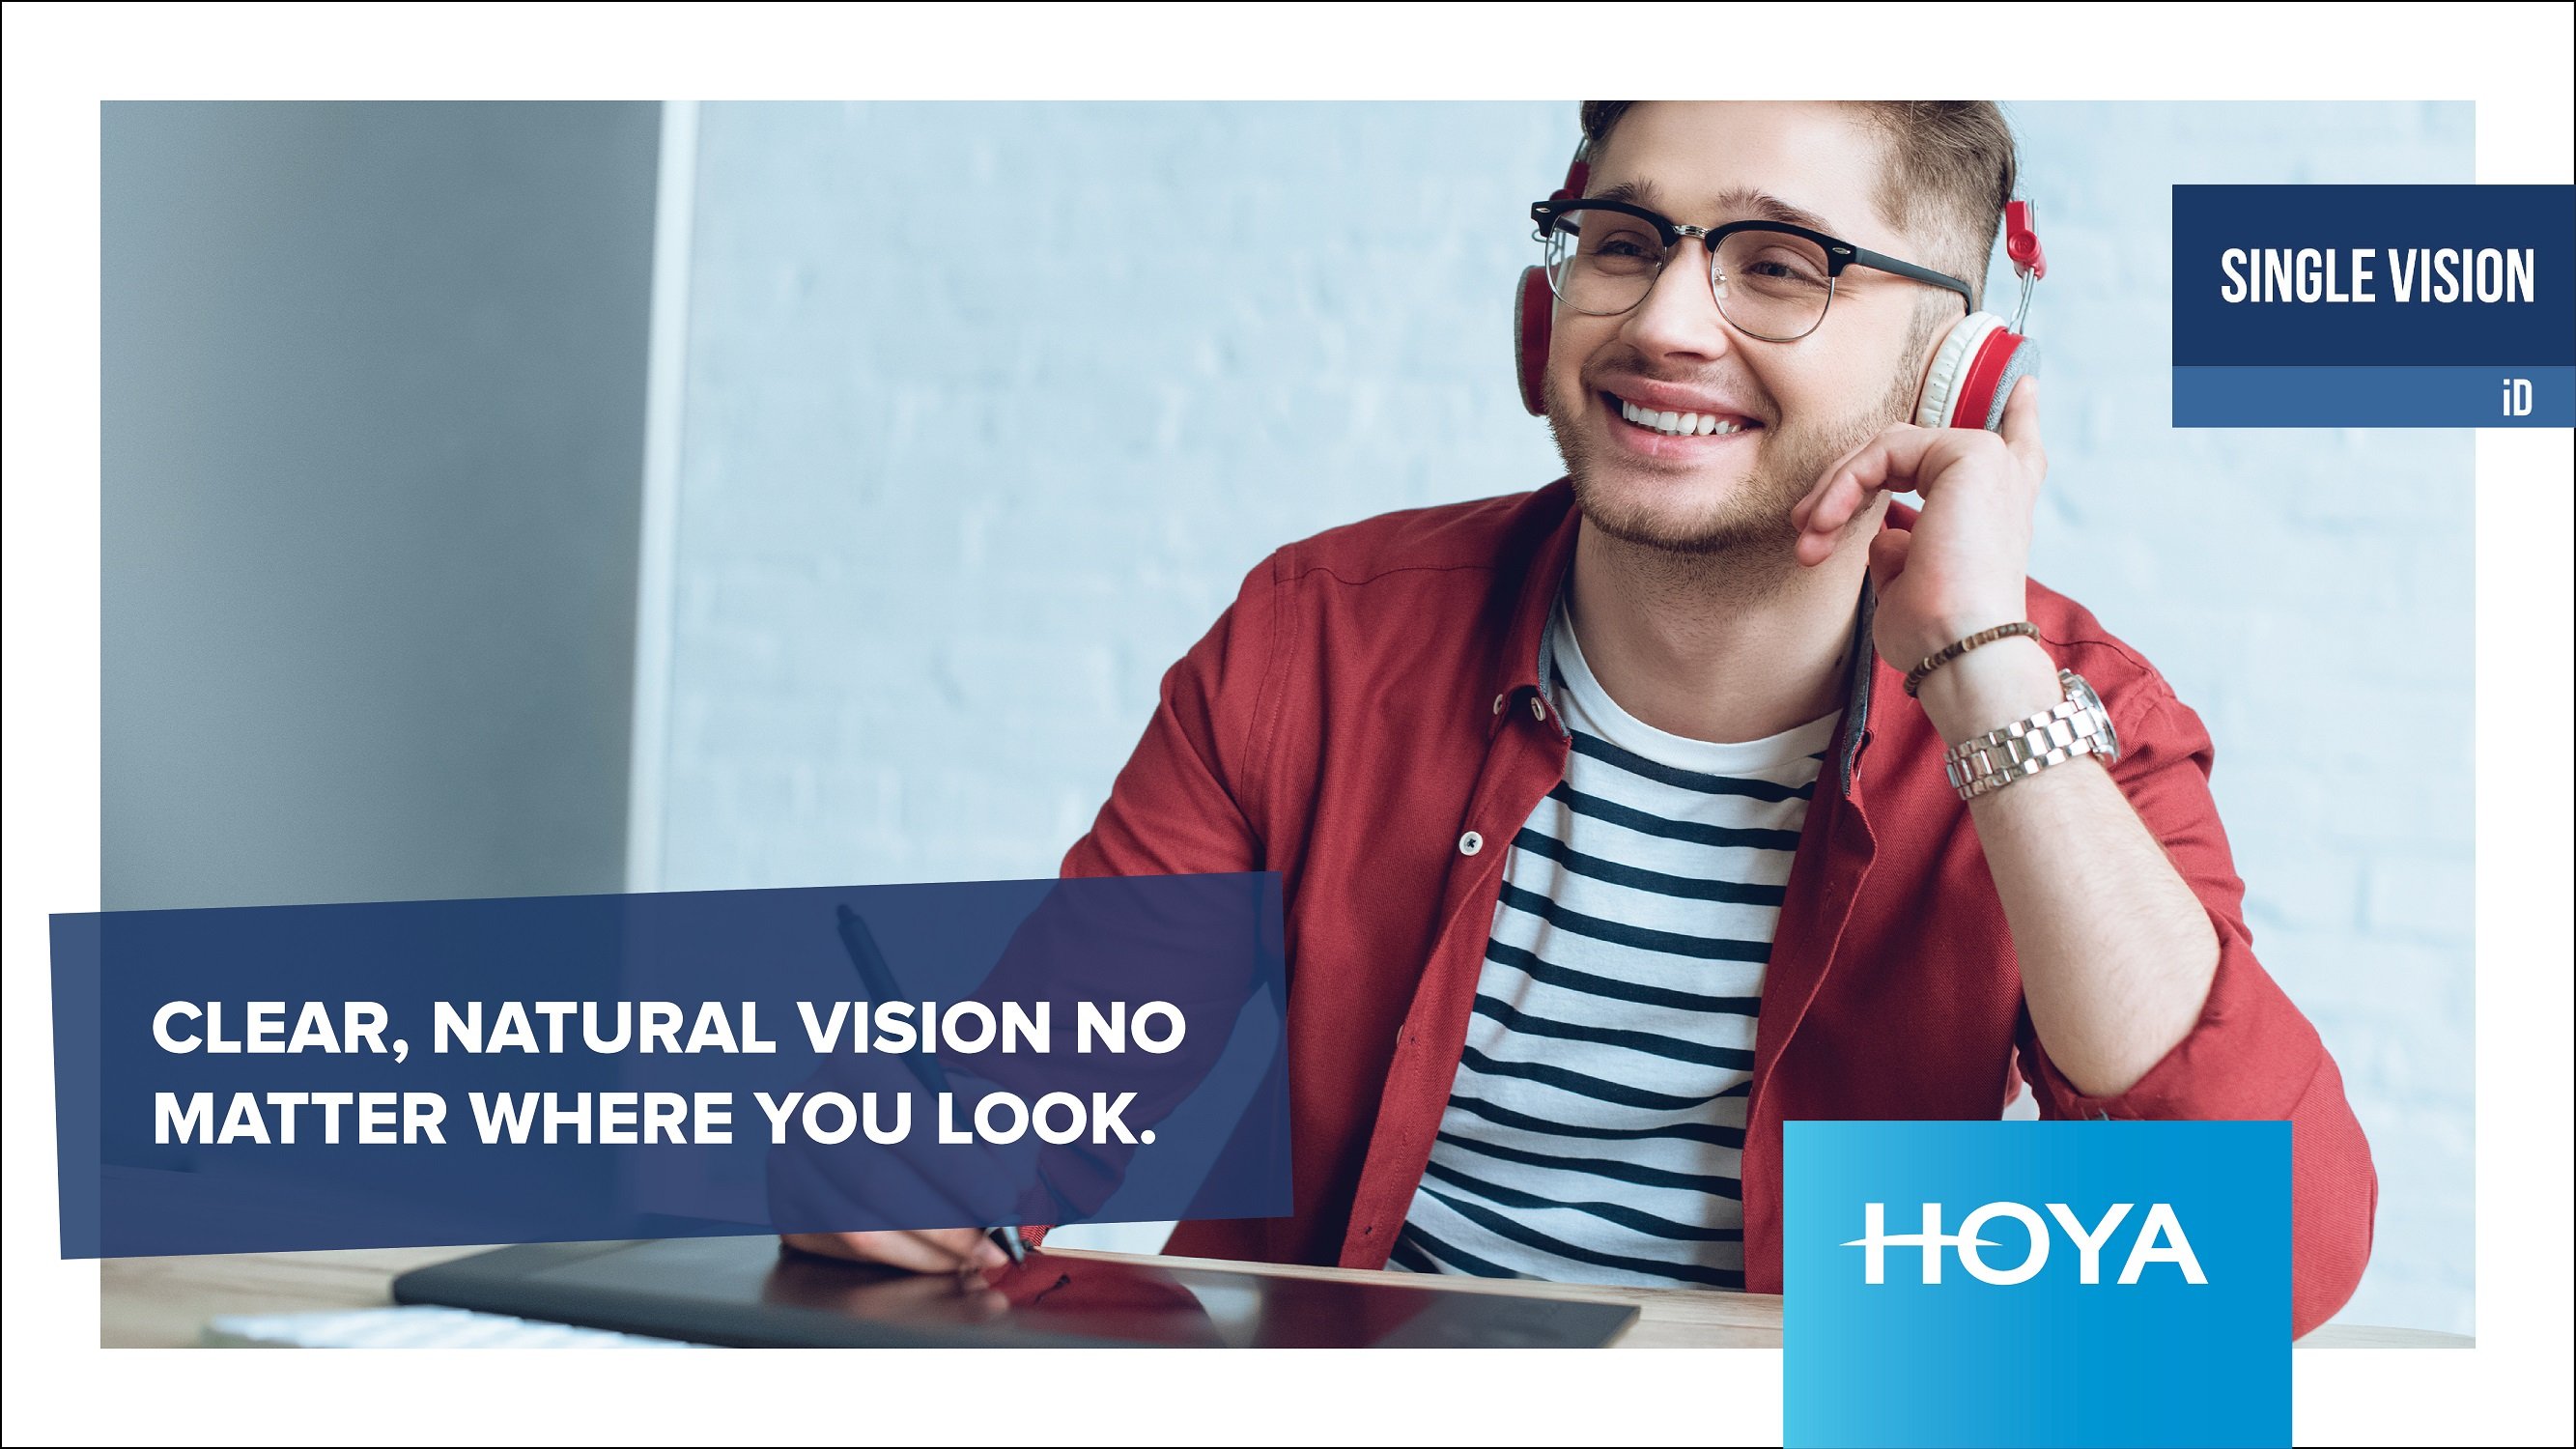 Hoya single vision